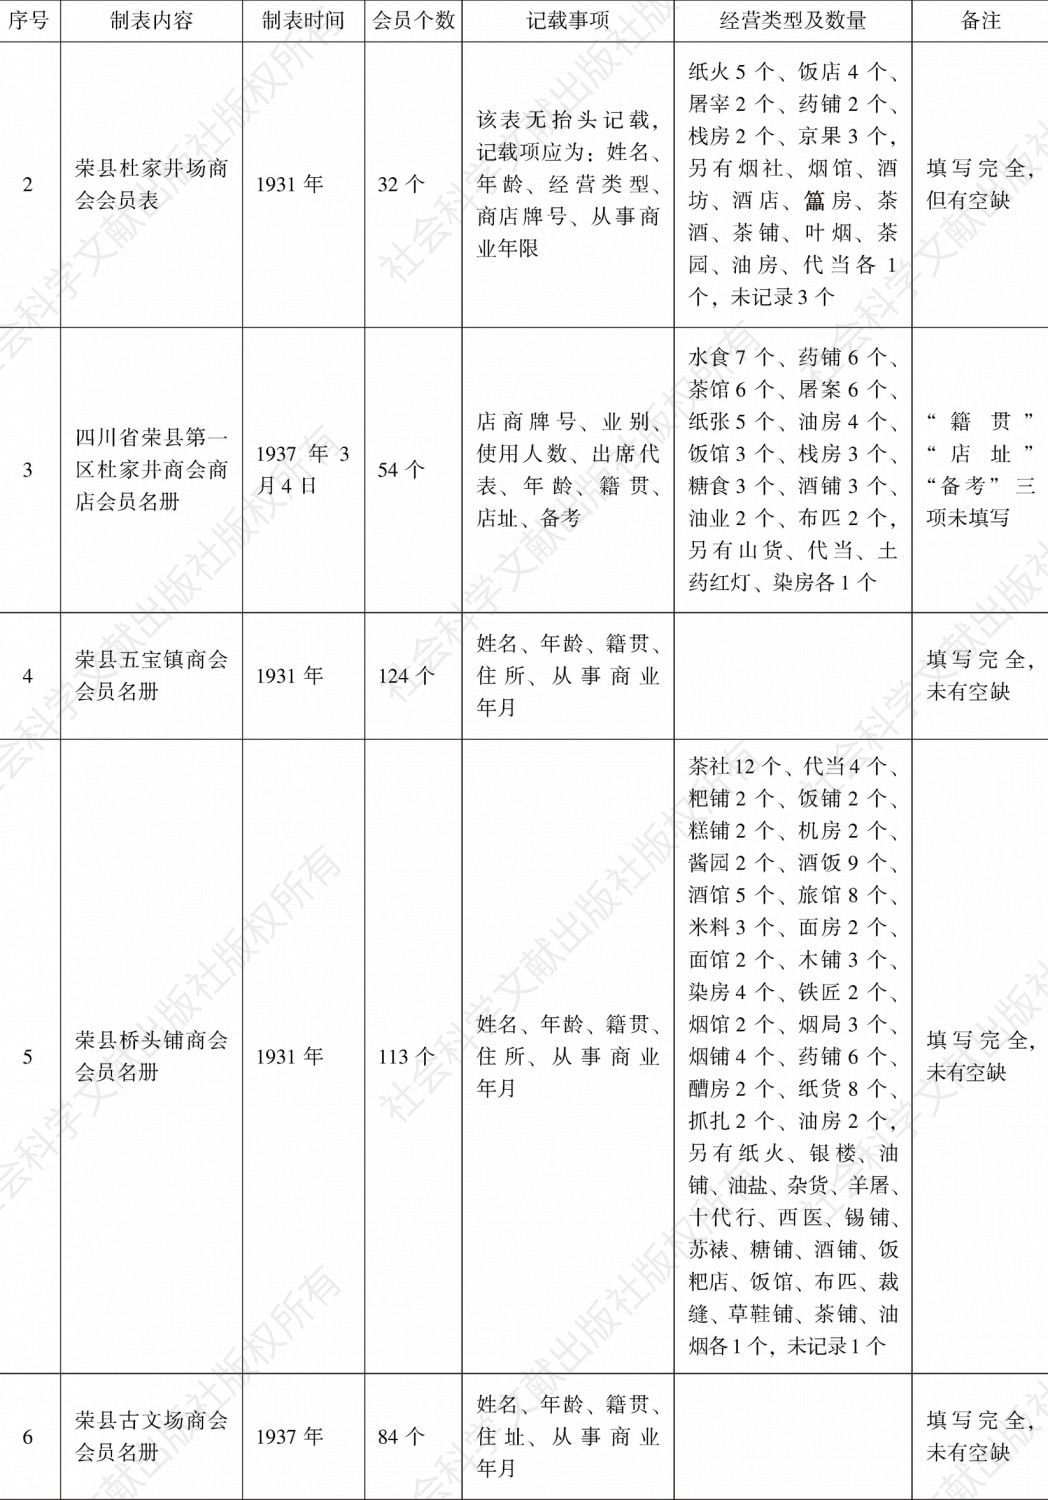 荣县商会事务分所造报名册汇编-续表1